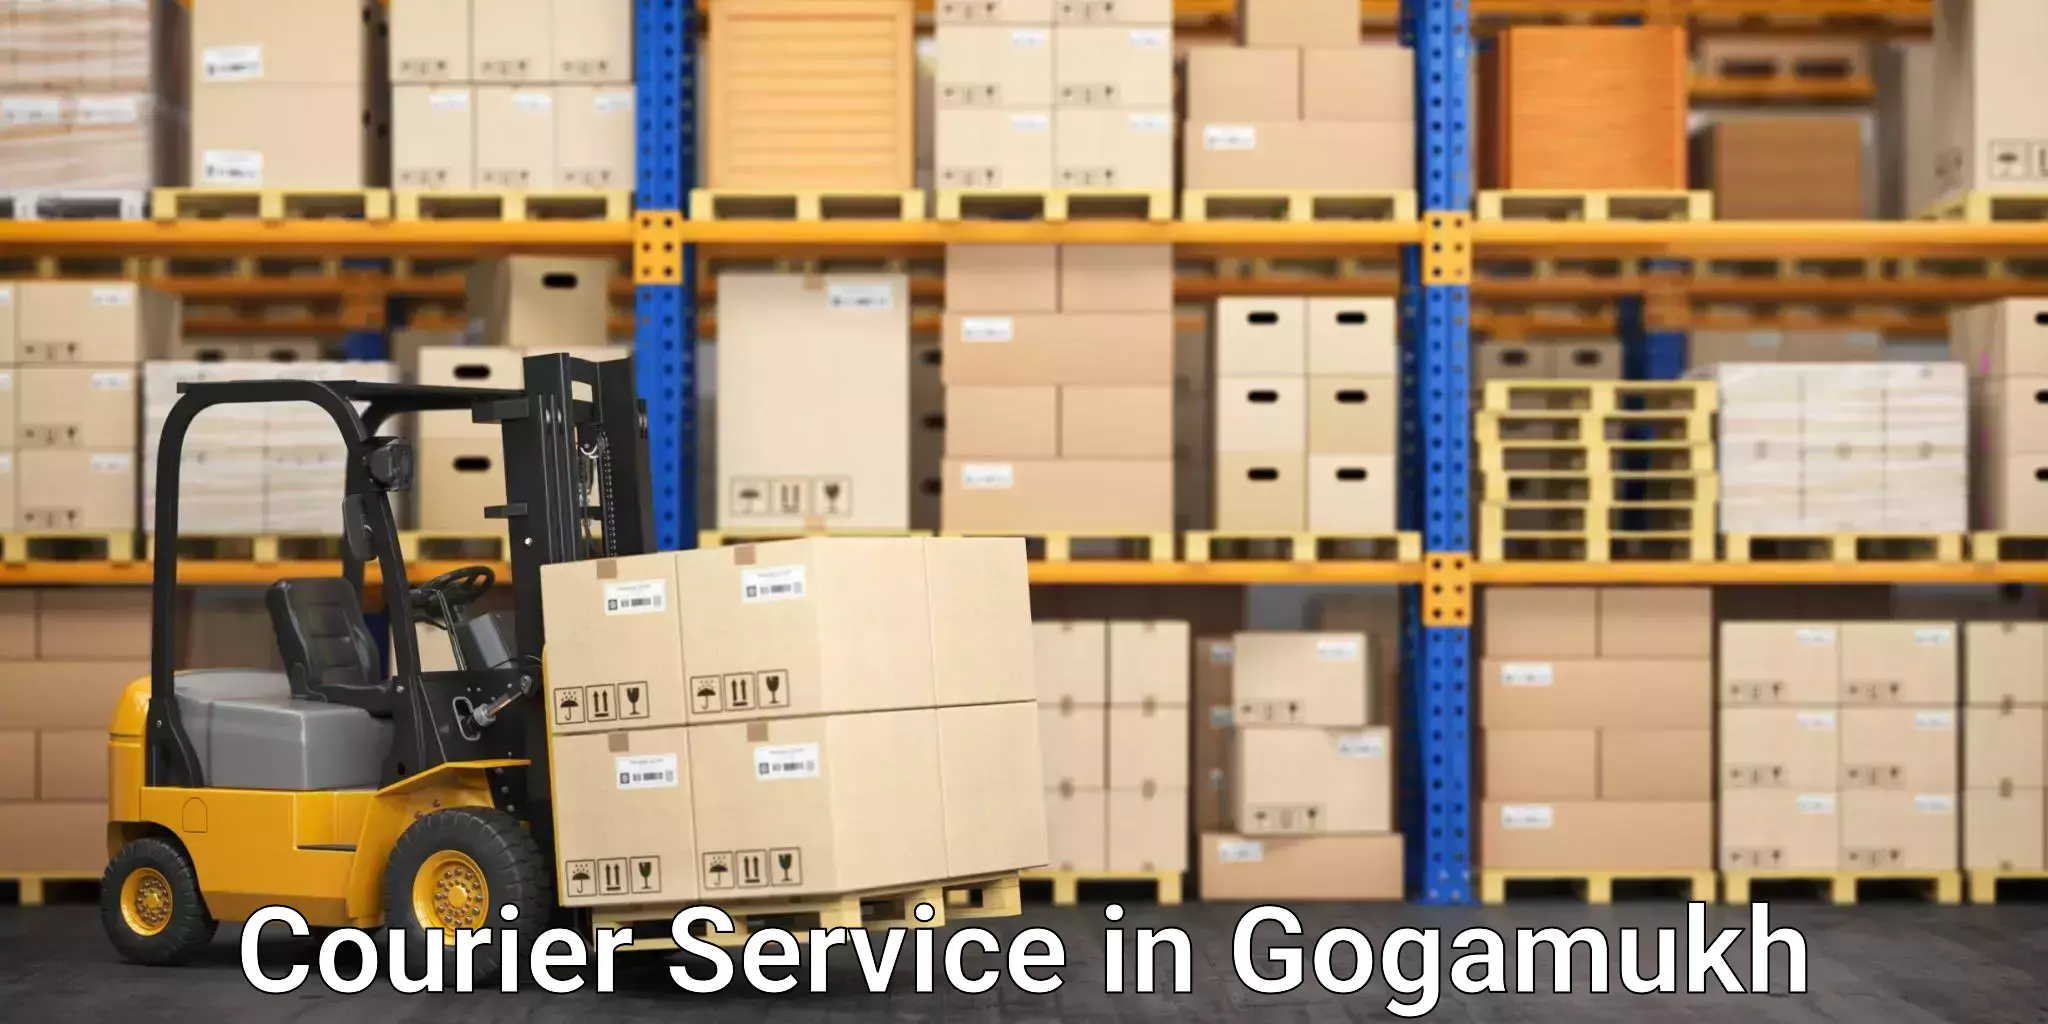 Customer-centric shipping in Gogamukh